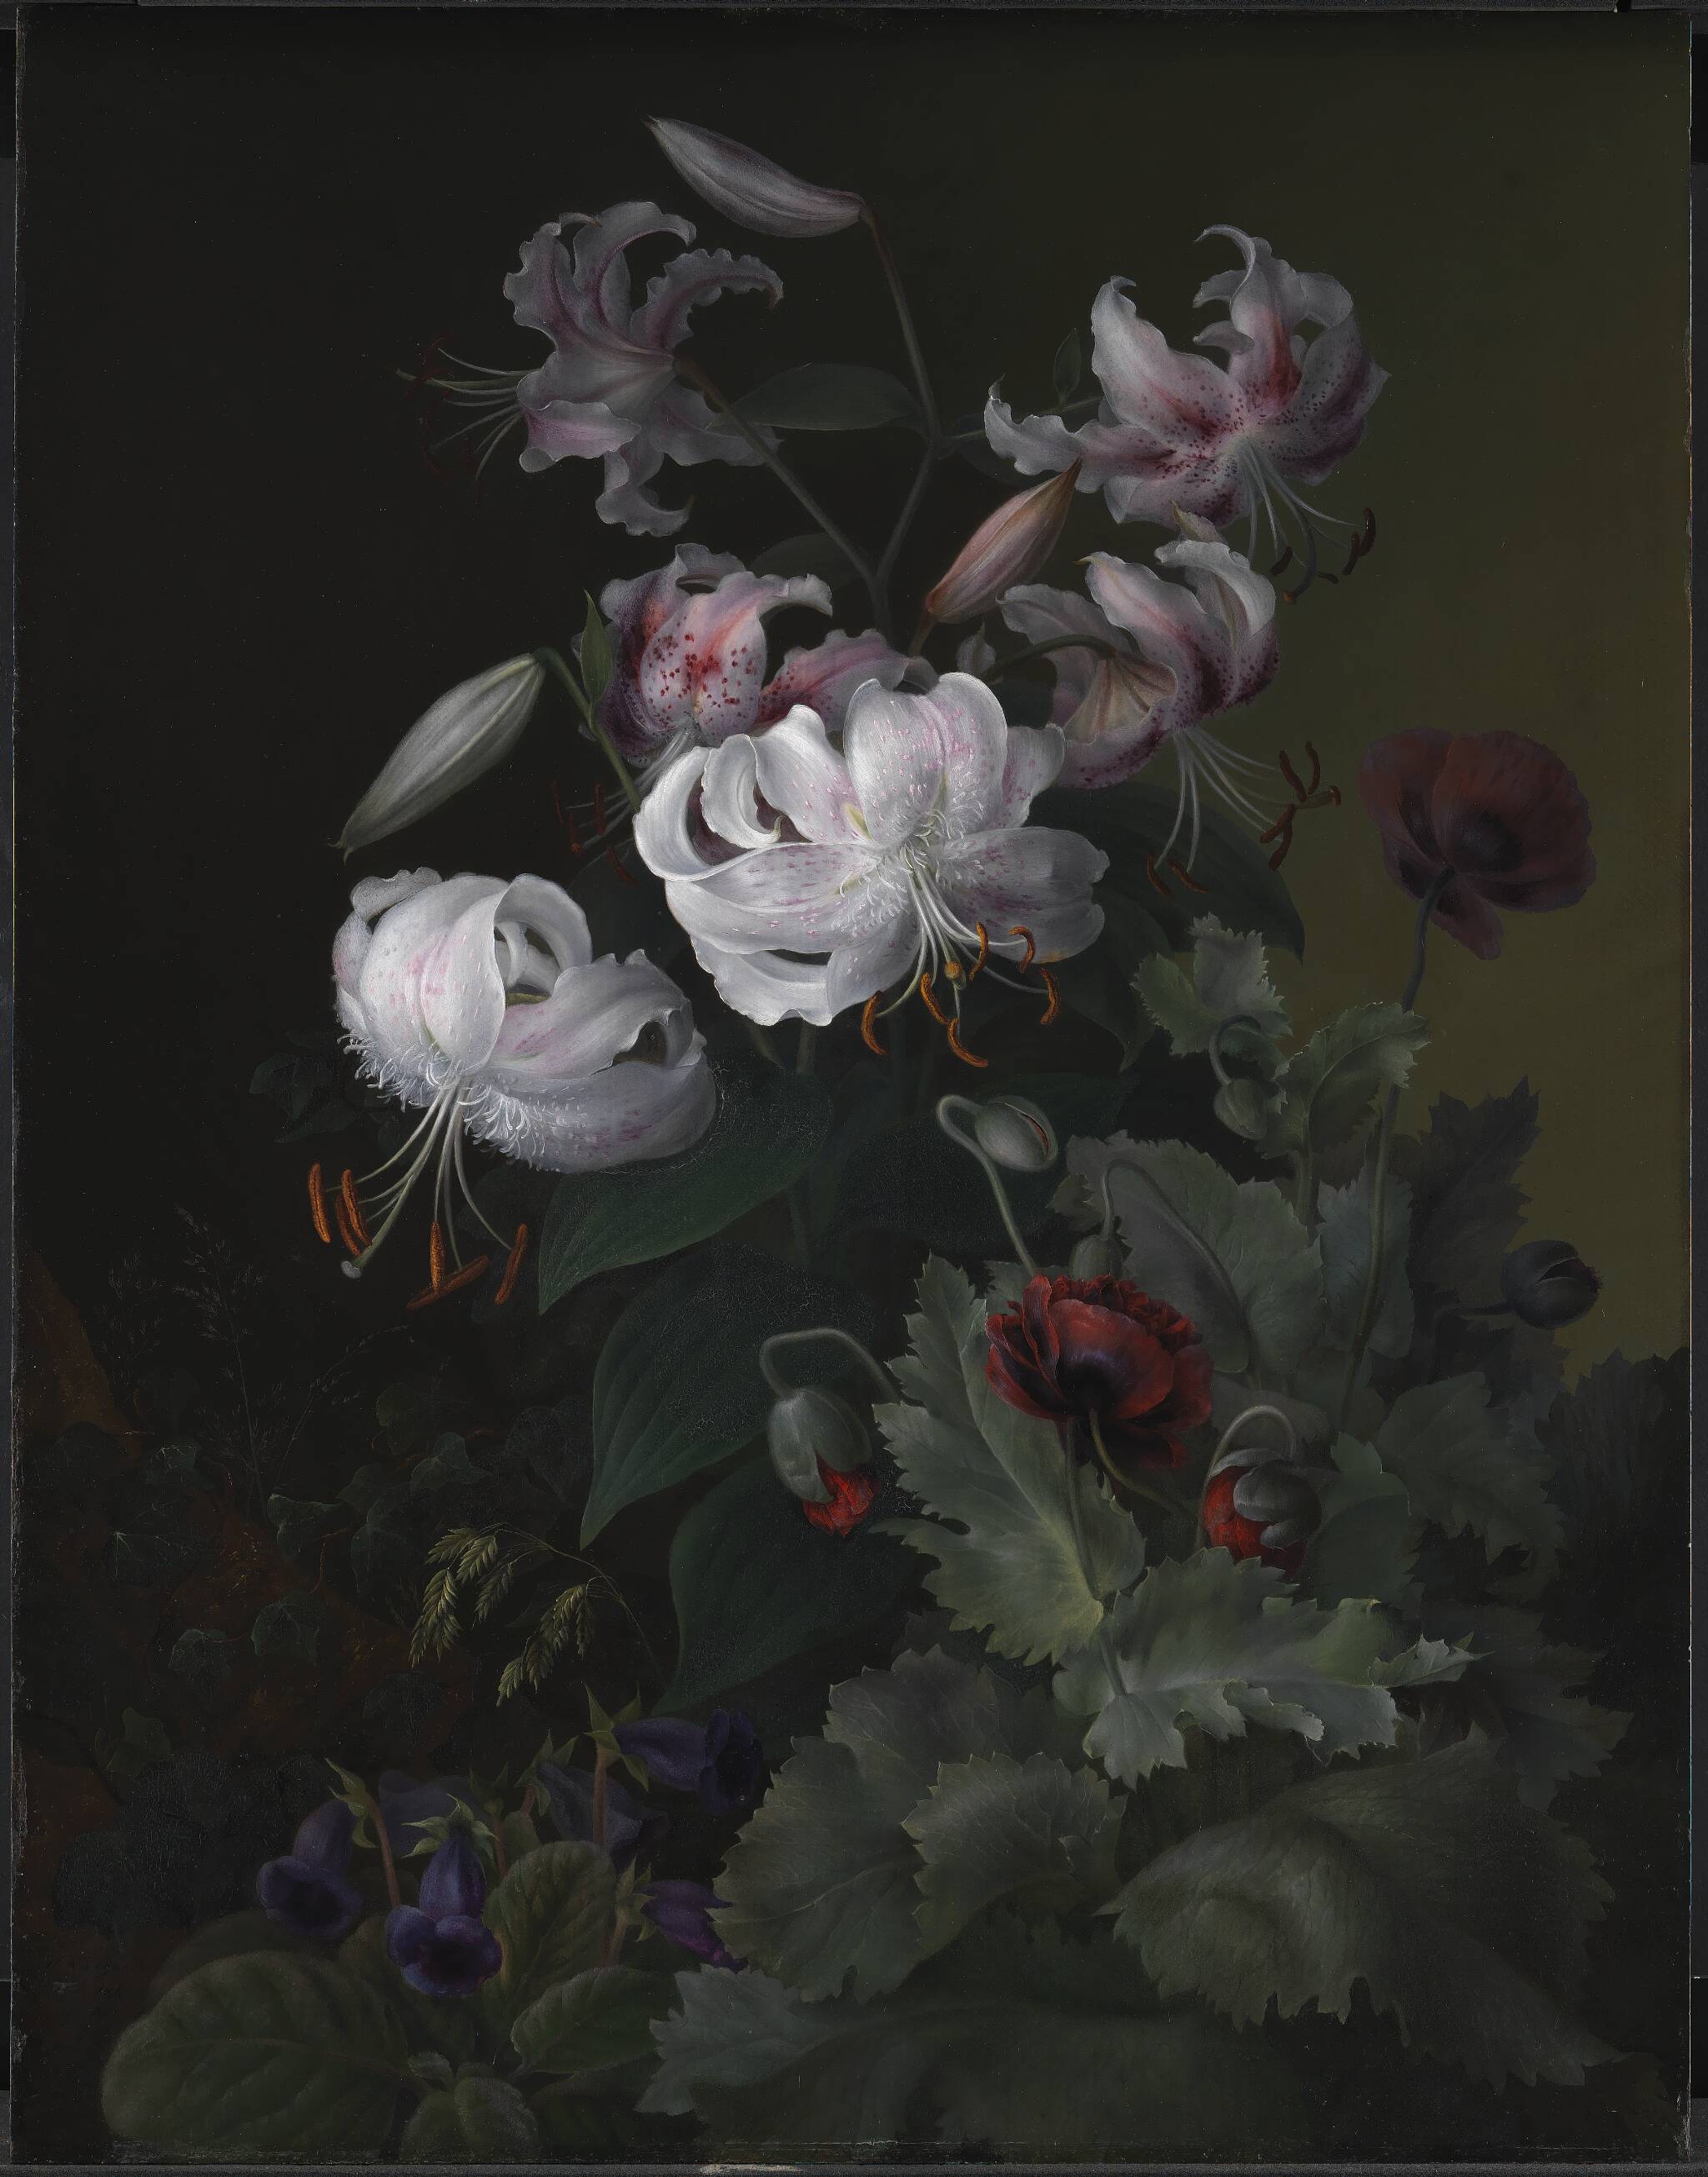 Flowering Plants by Hermania Neergaard - 1845 - 64 x 50 cm Statens Museum for Kunst